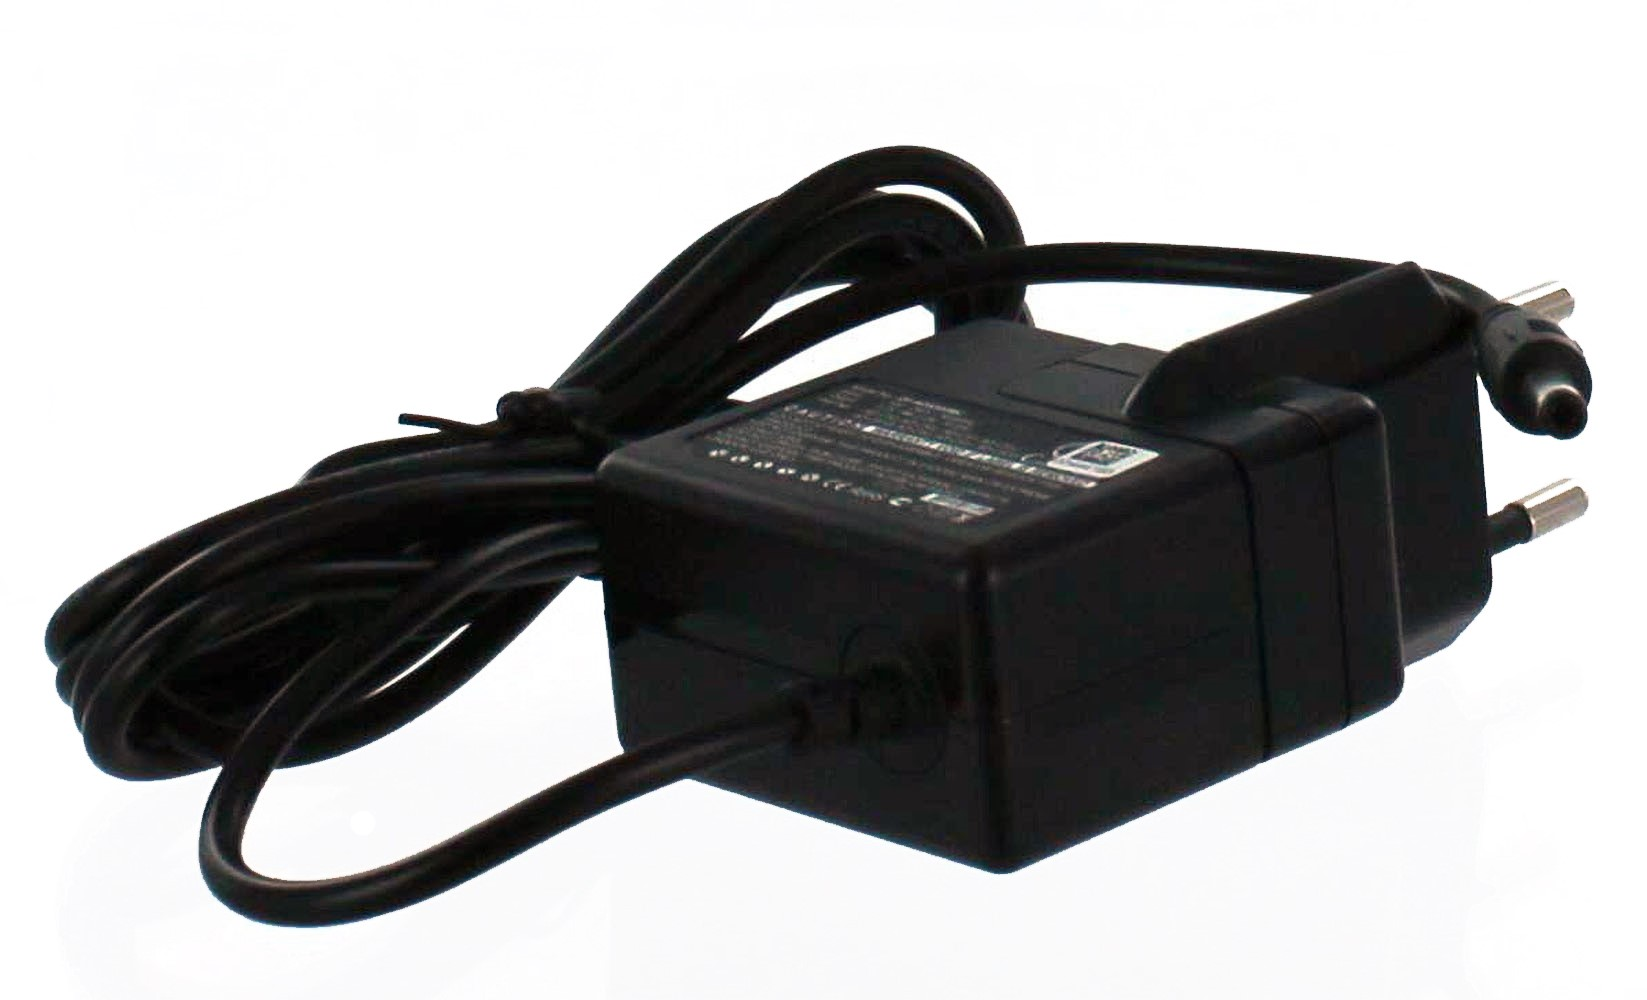 MOBILOTEC Netzteil kompatibel mit Casio Casio, schwarz Volt, EX-Z1050 Exilim Netzteil/Ladegerät 5.3